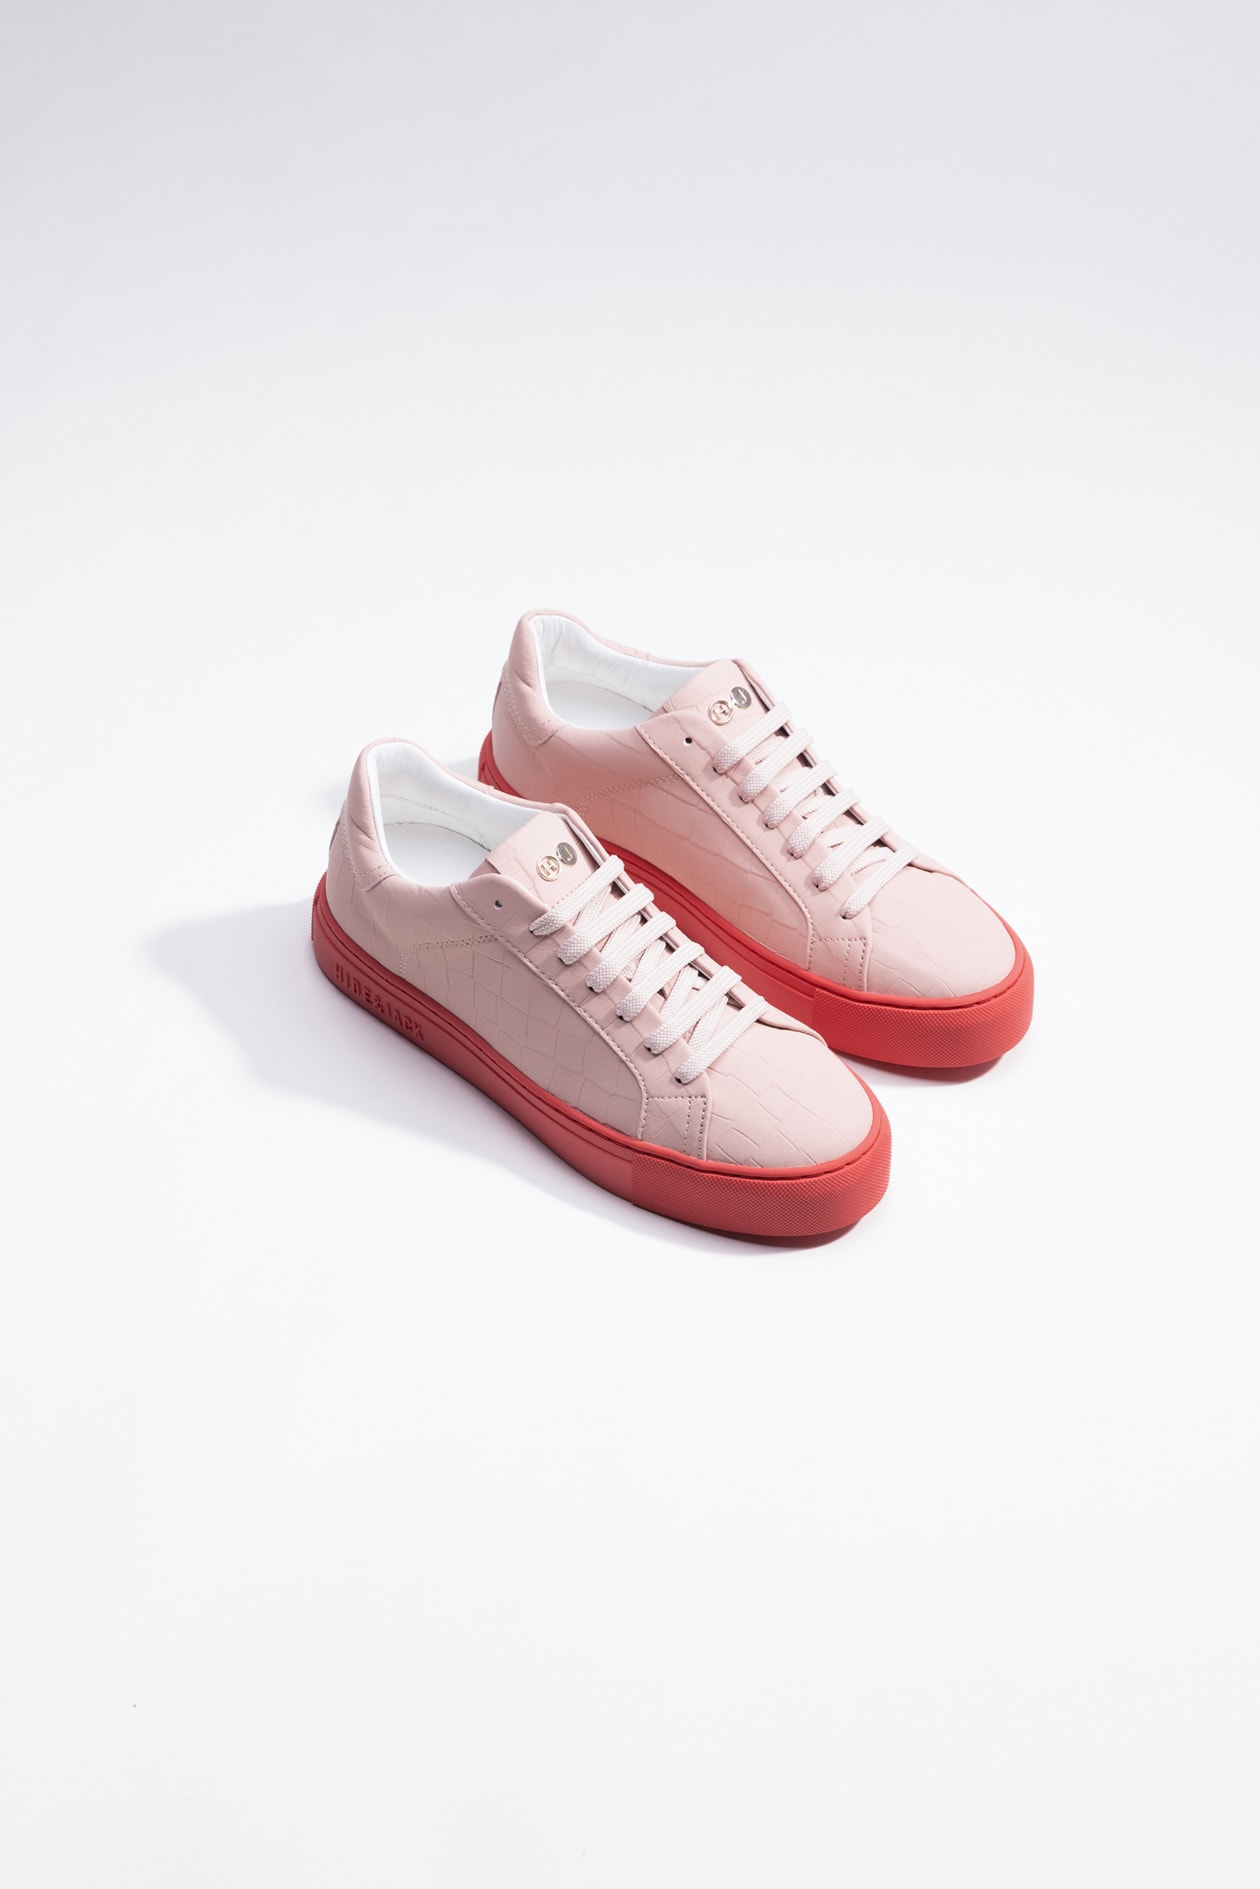 Hide & Jack Low Top Sneaker - Essence Pink Red